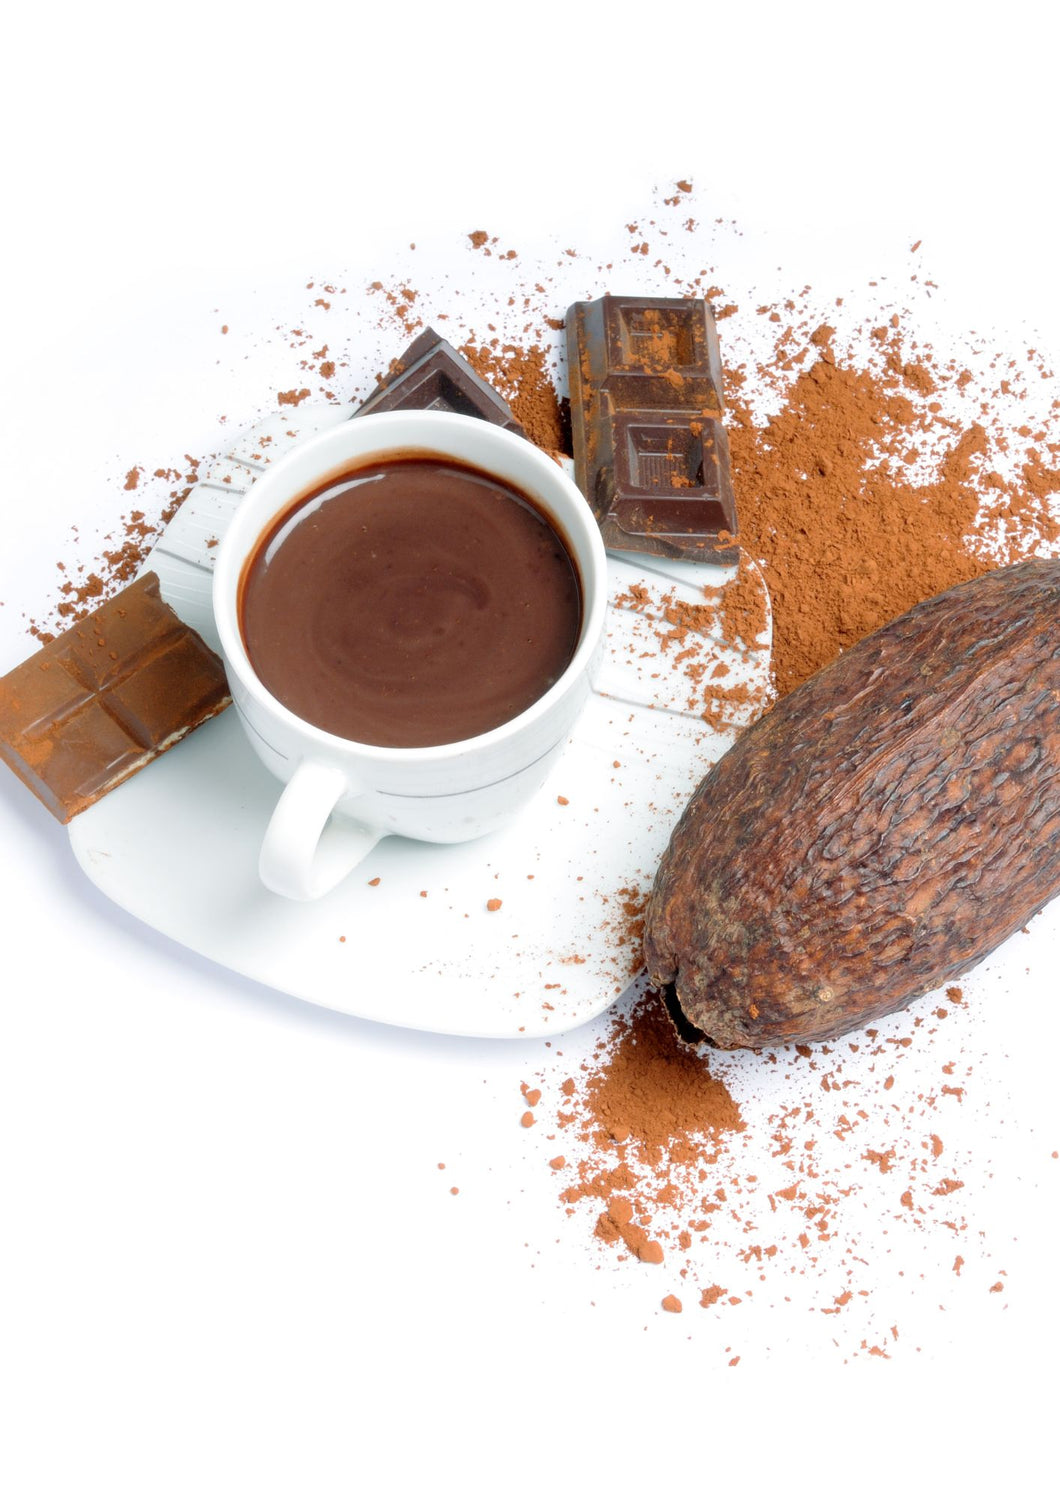 Ceremonial Cacao